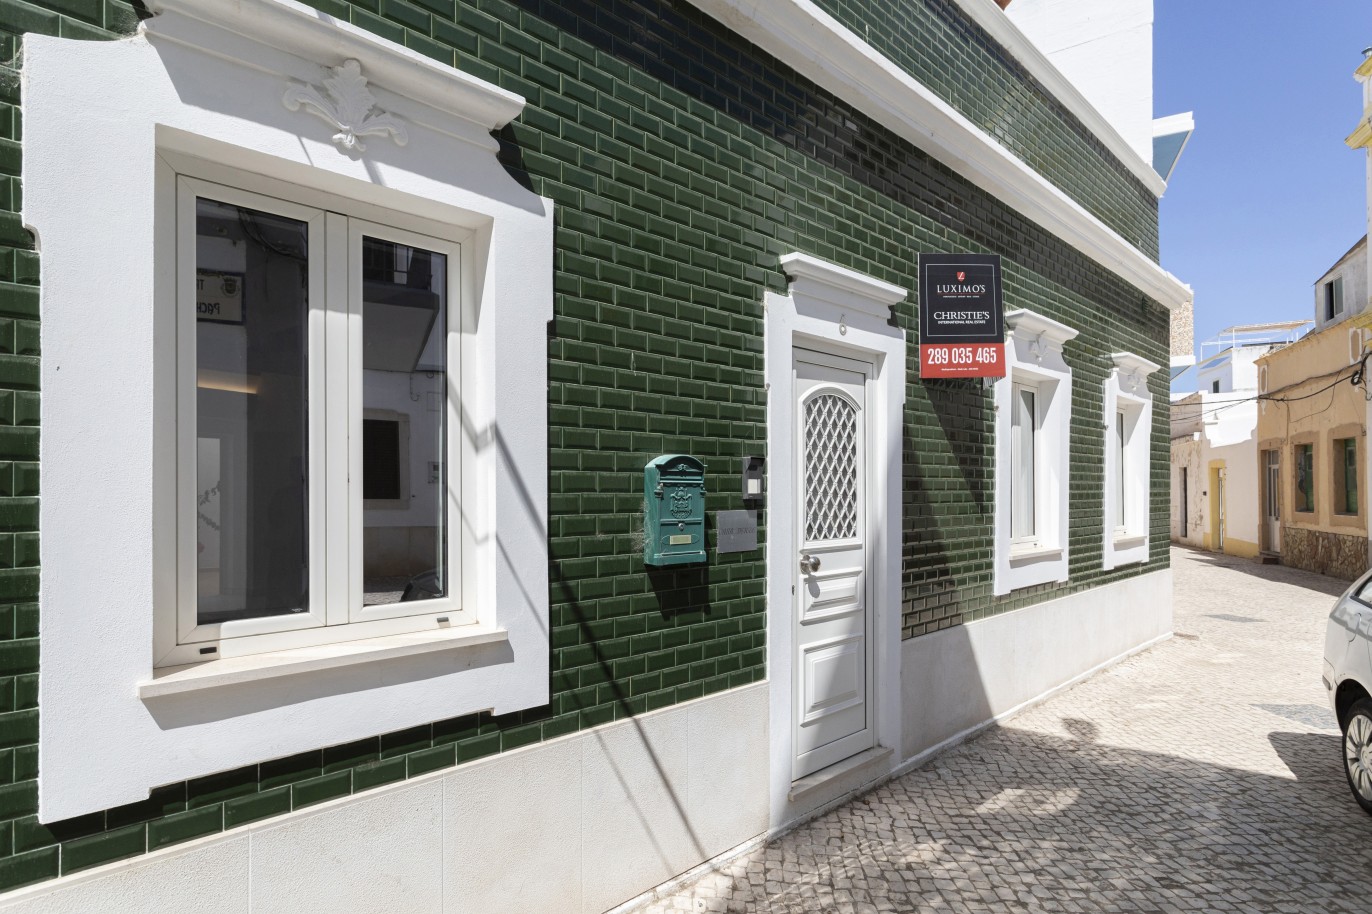 Renovierte Villa mit 3 Schlafzimmern zu verkaufen in der Innenstadt von Olhão, Algarve_227439